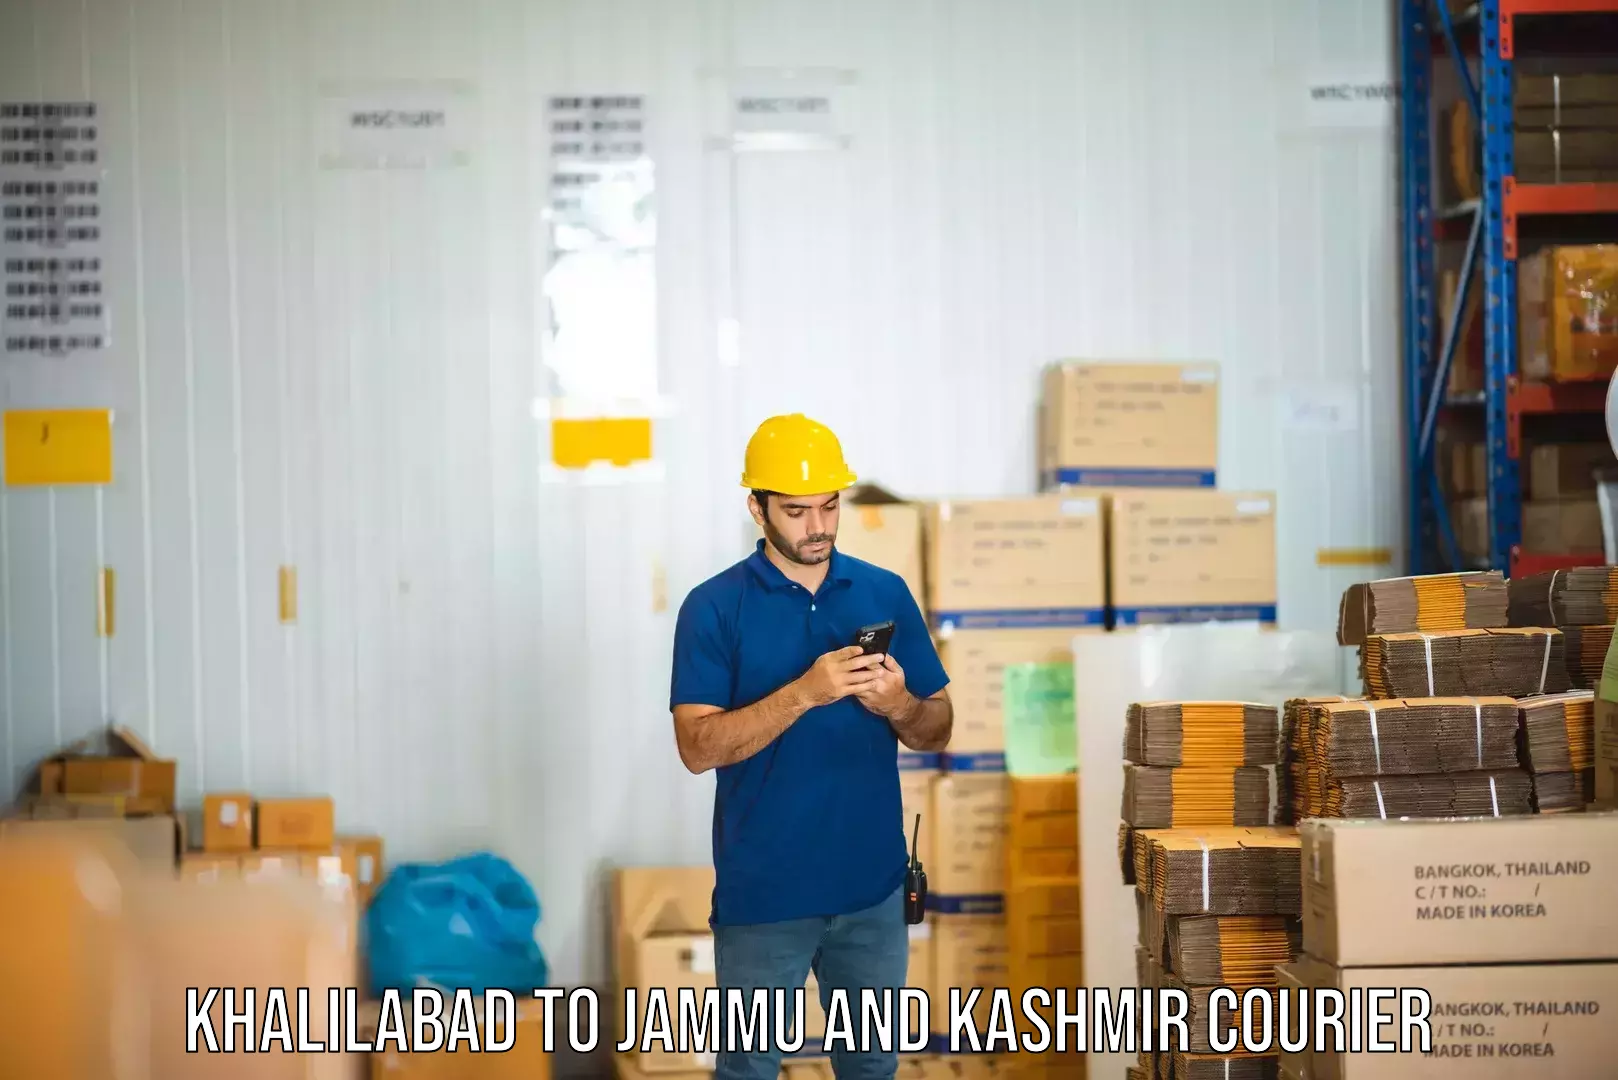 Cross-border shipping Khalilabad to Jammu